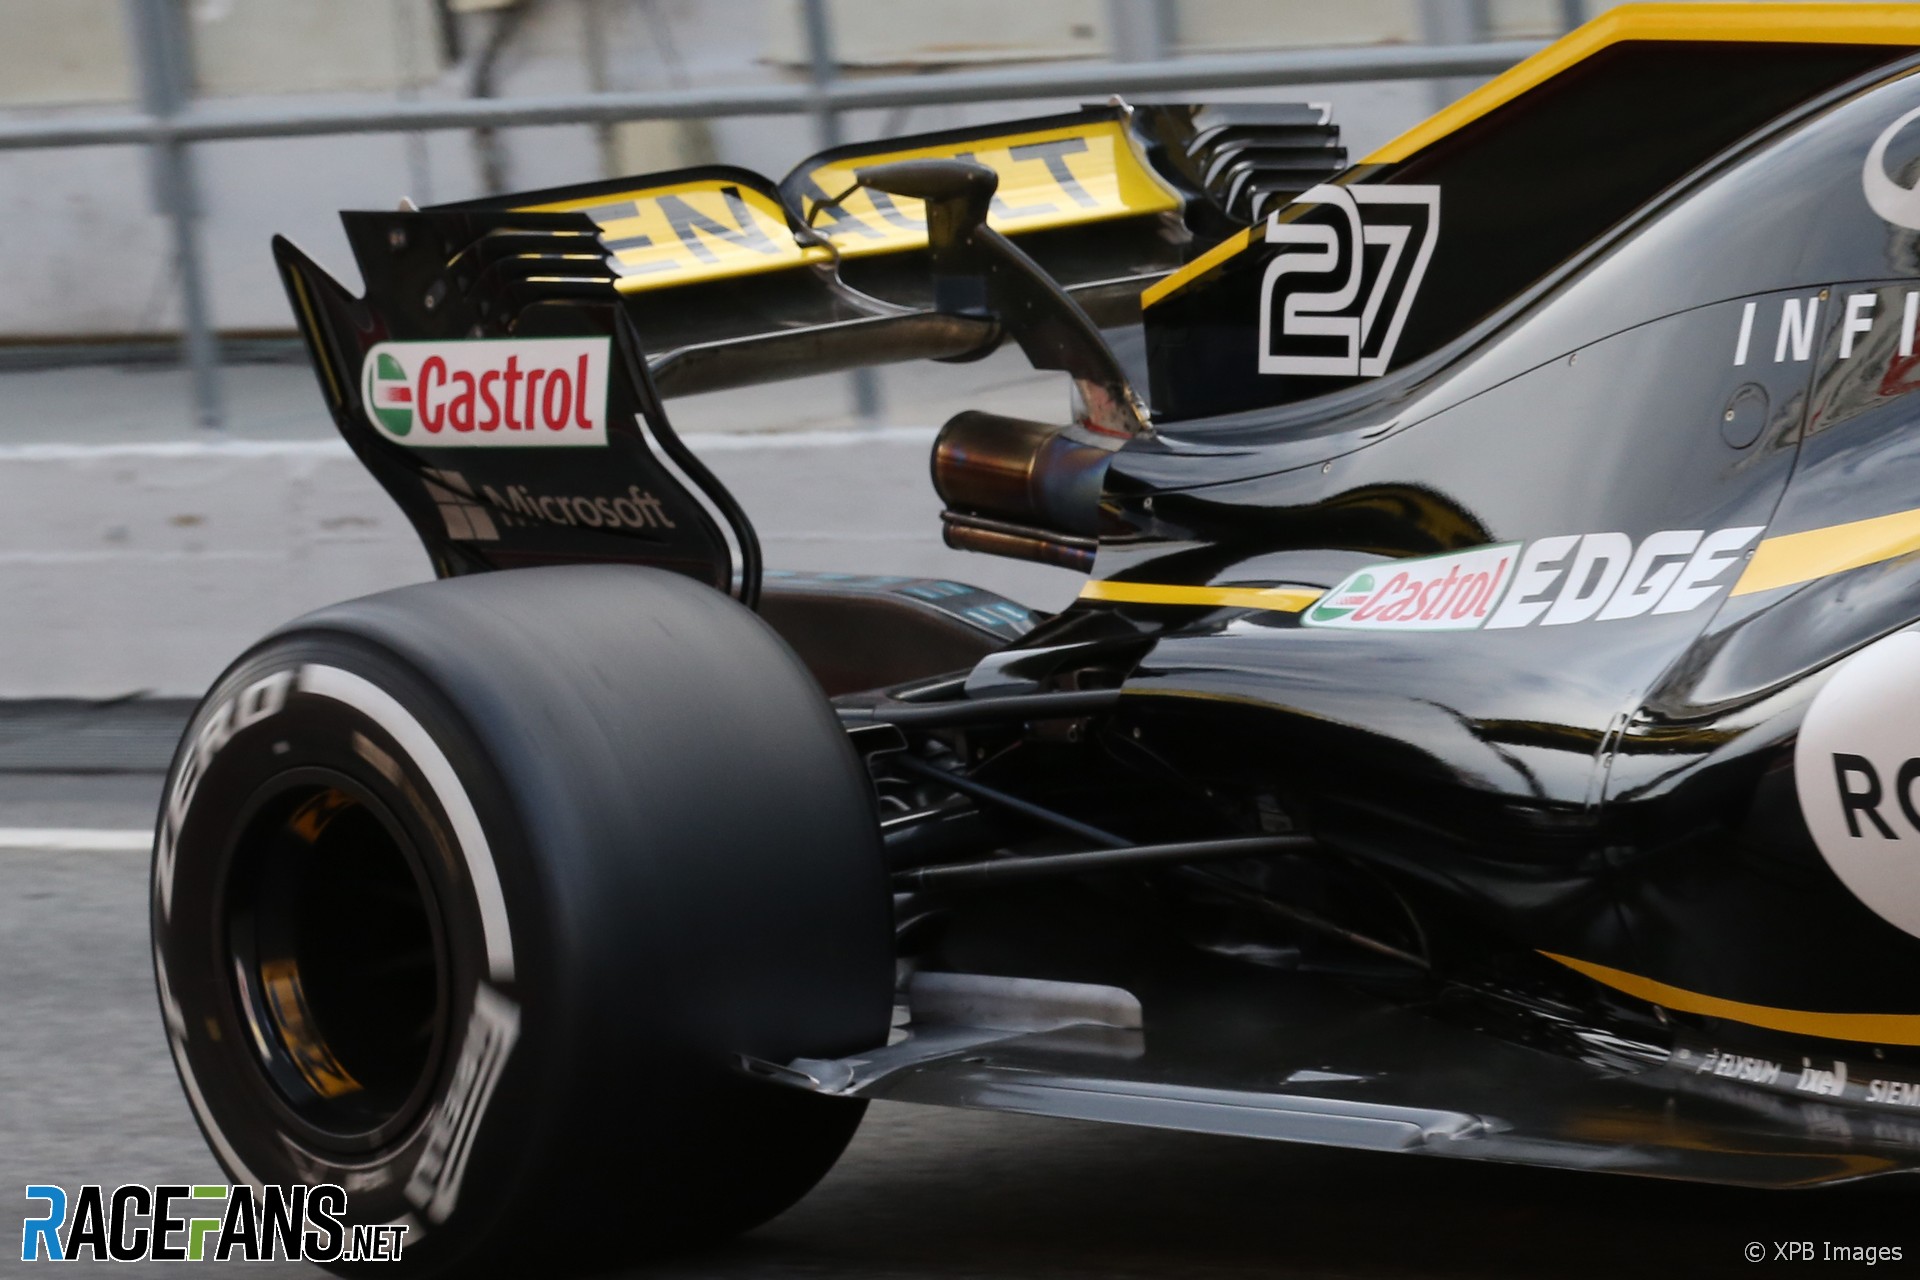 Renault, Circuit de Catalunya, 2018